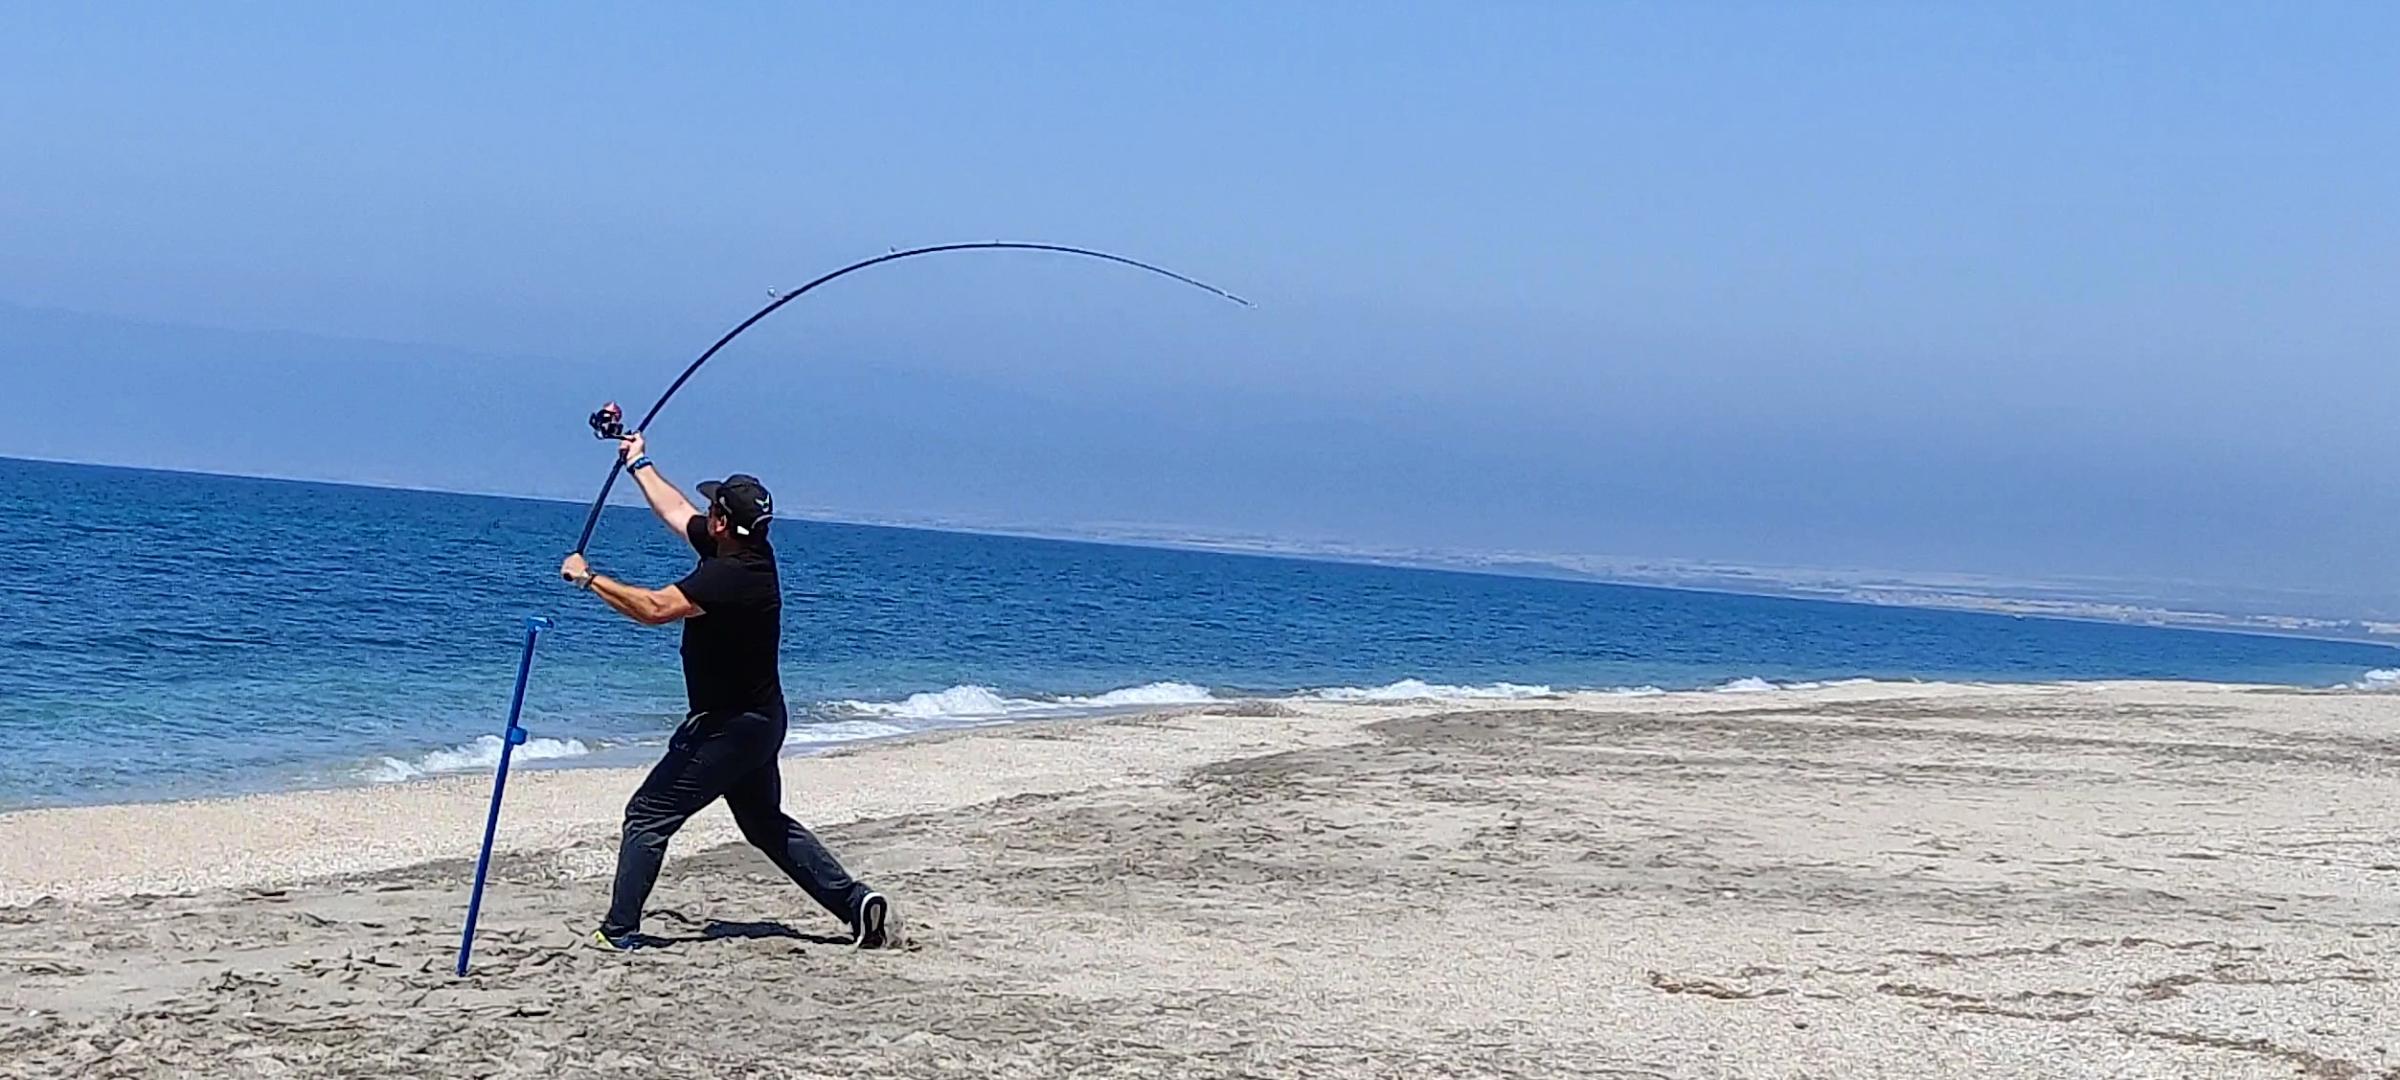 La pesca de garfish con surfcasting, una pesca de verano divertida